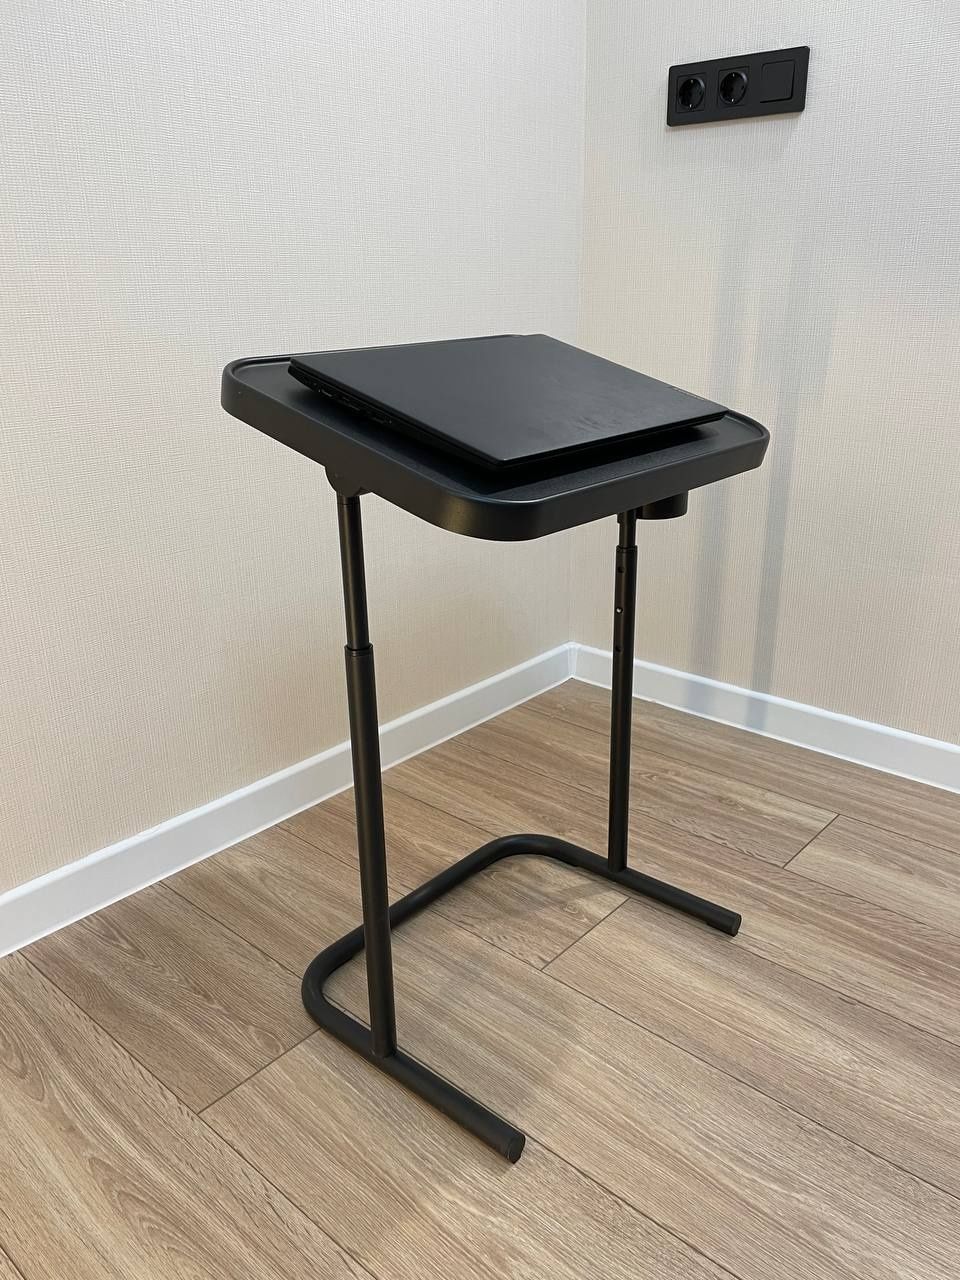 Столик для ноутбука>Подставка для ноутбука>Складной стол>Икеа/Ikea